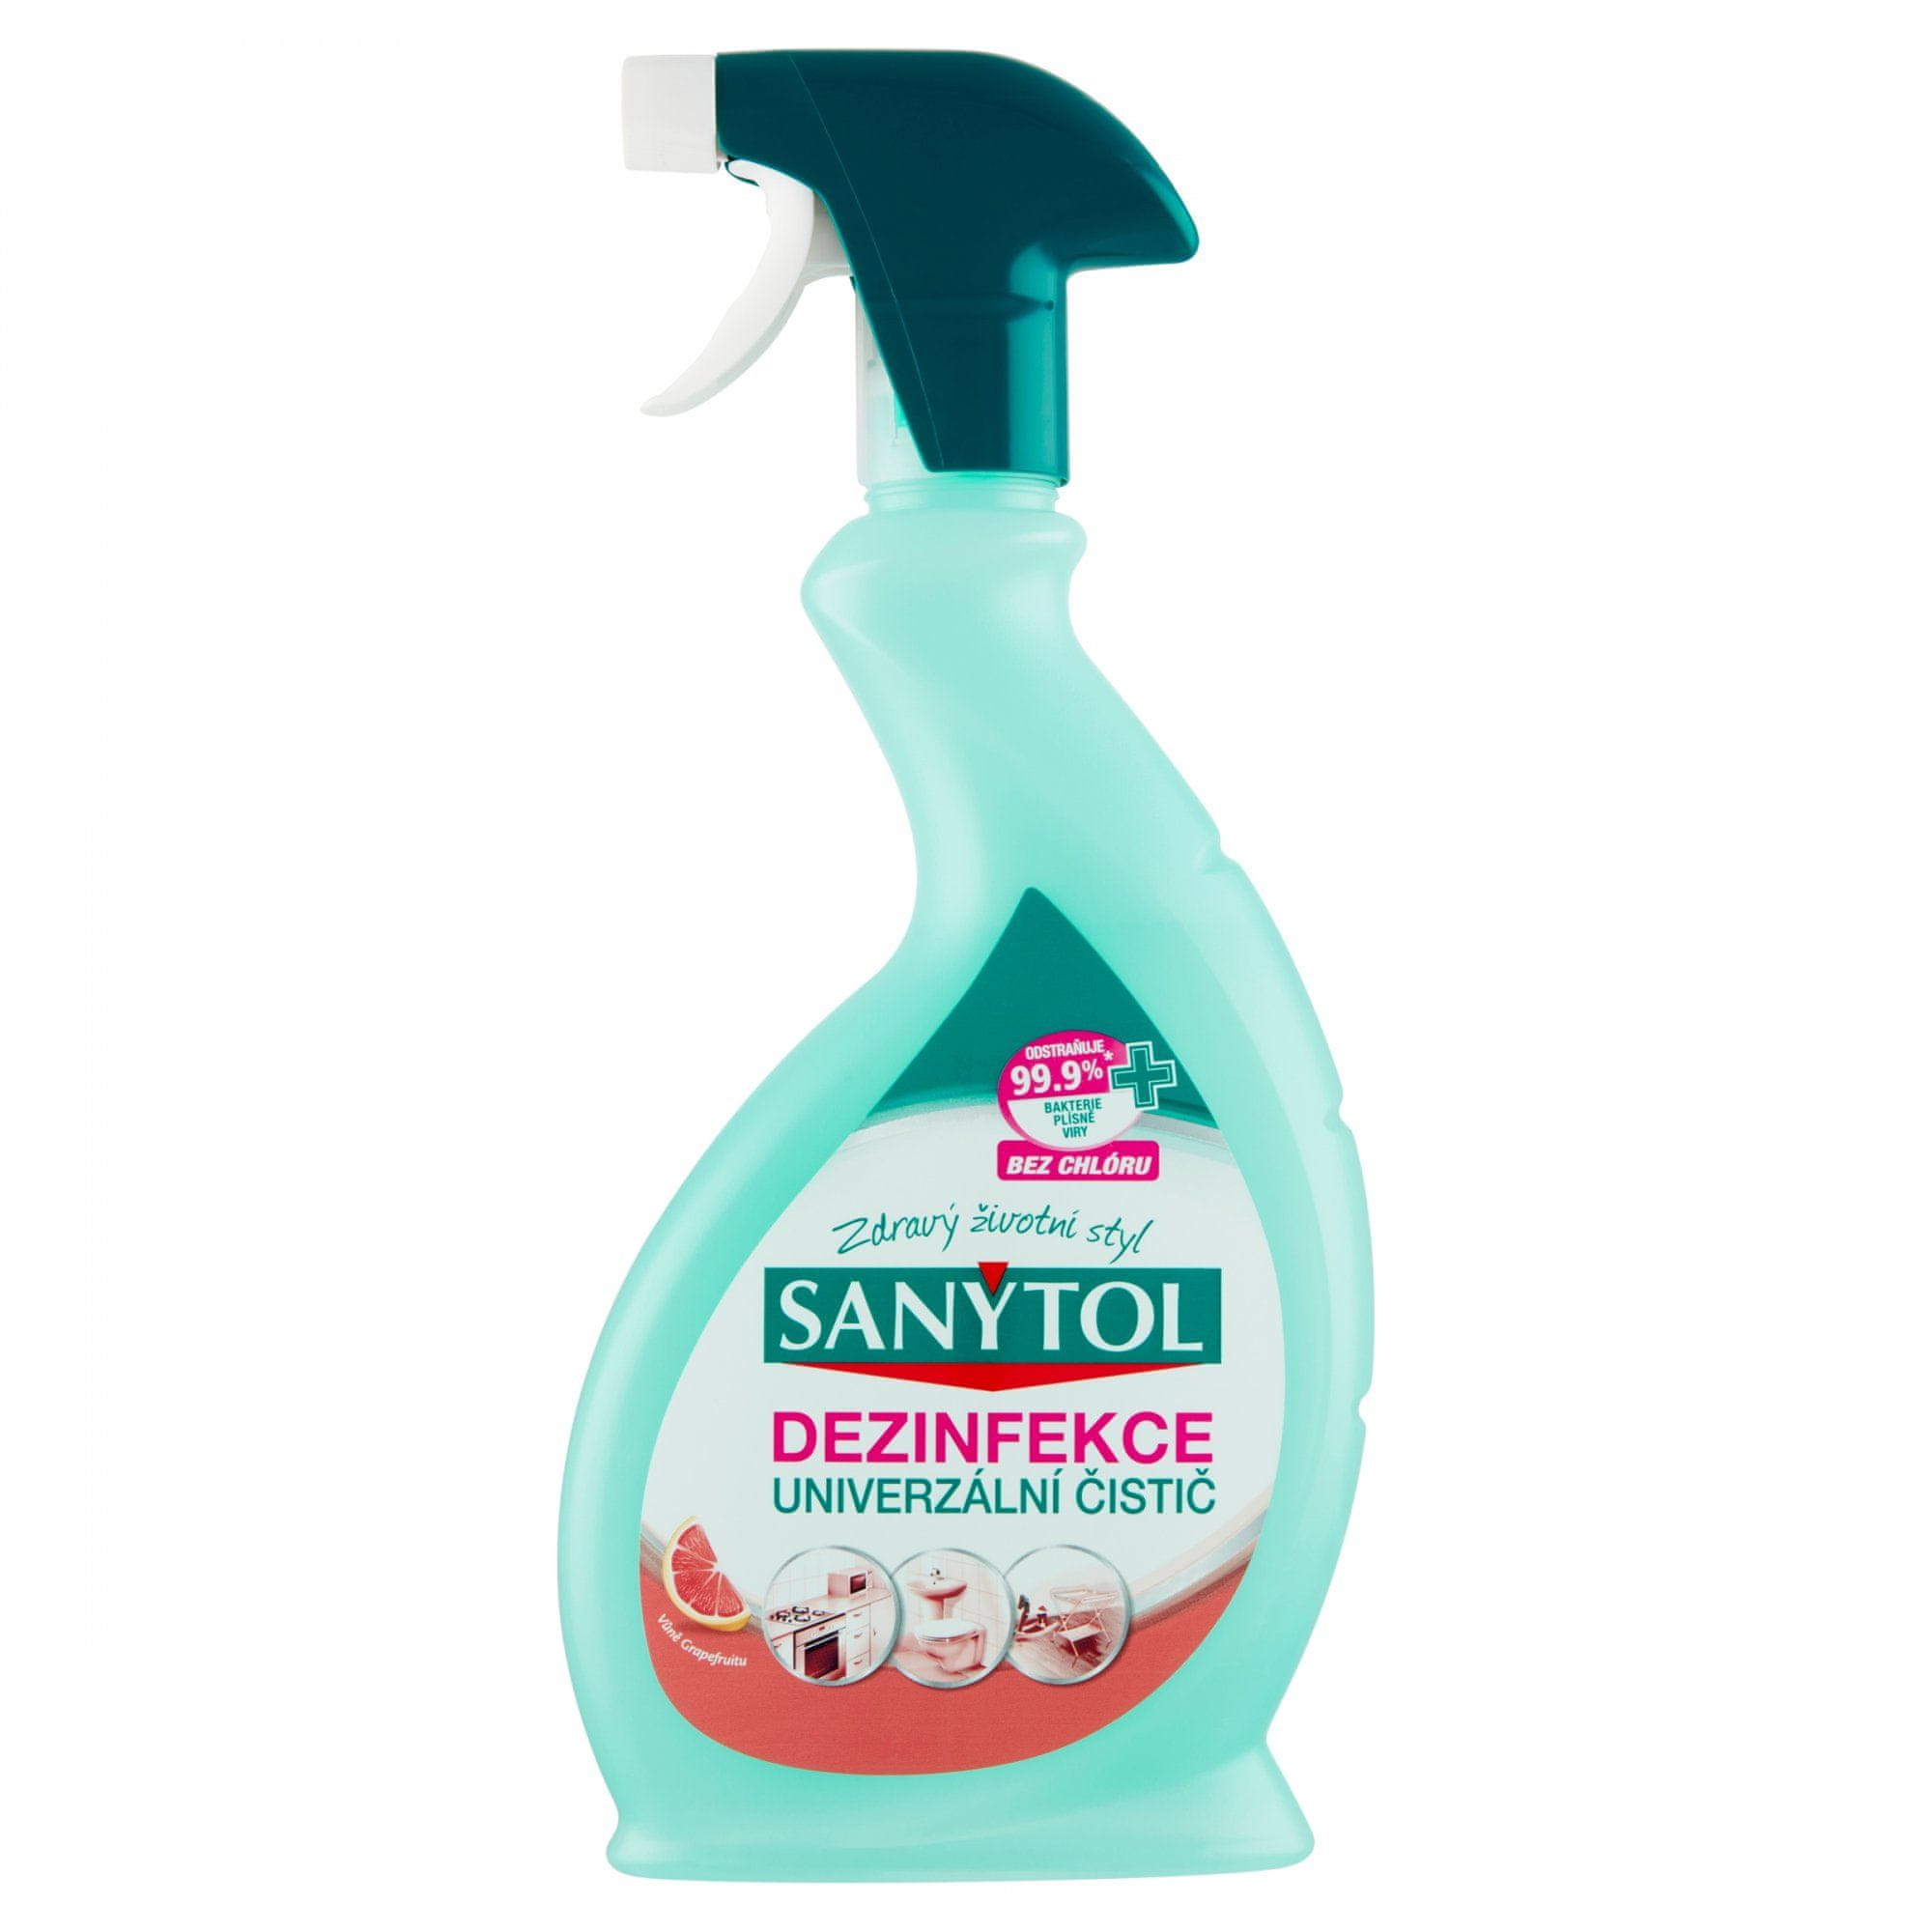 Sanytol dezinfekce univerzální čistič s vůní grapefruitu 500 ml